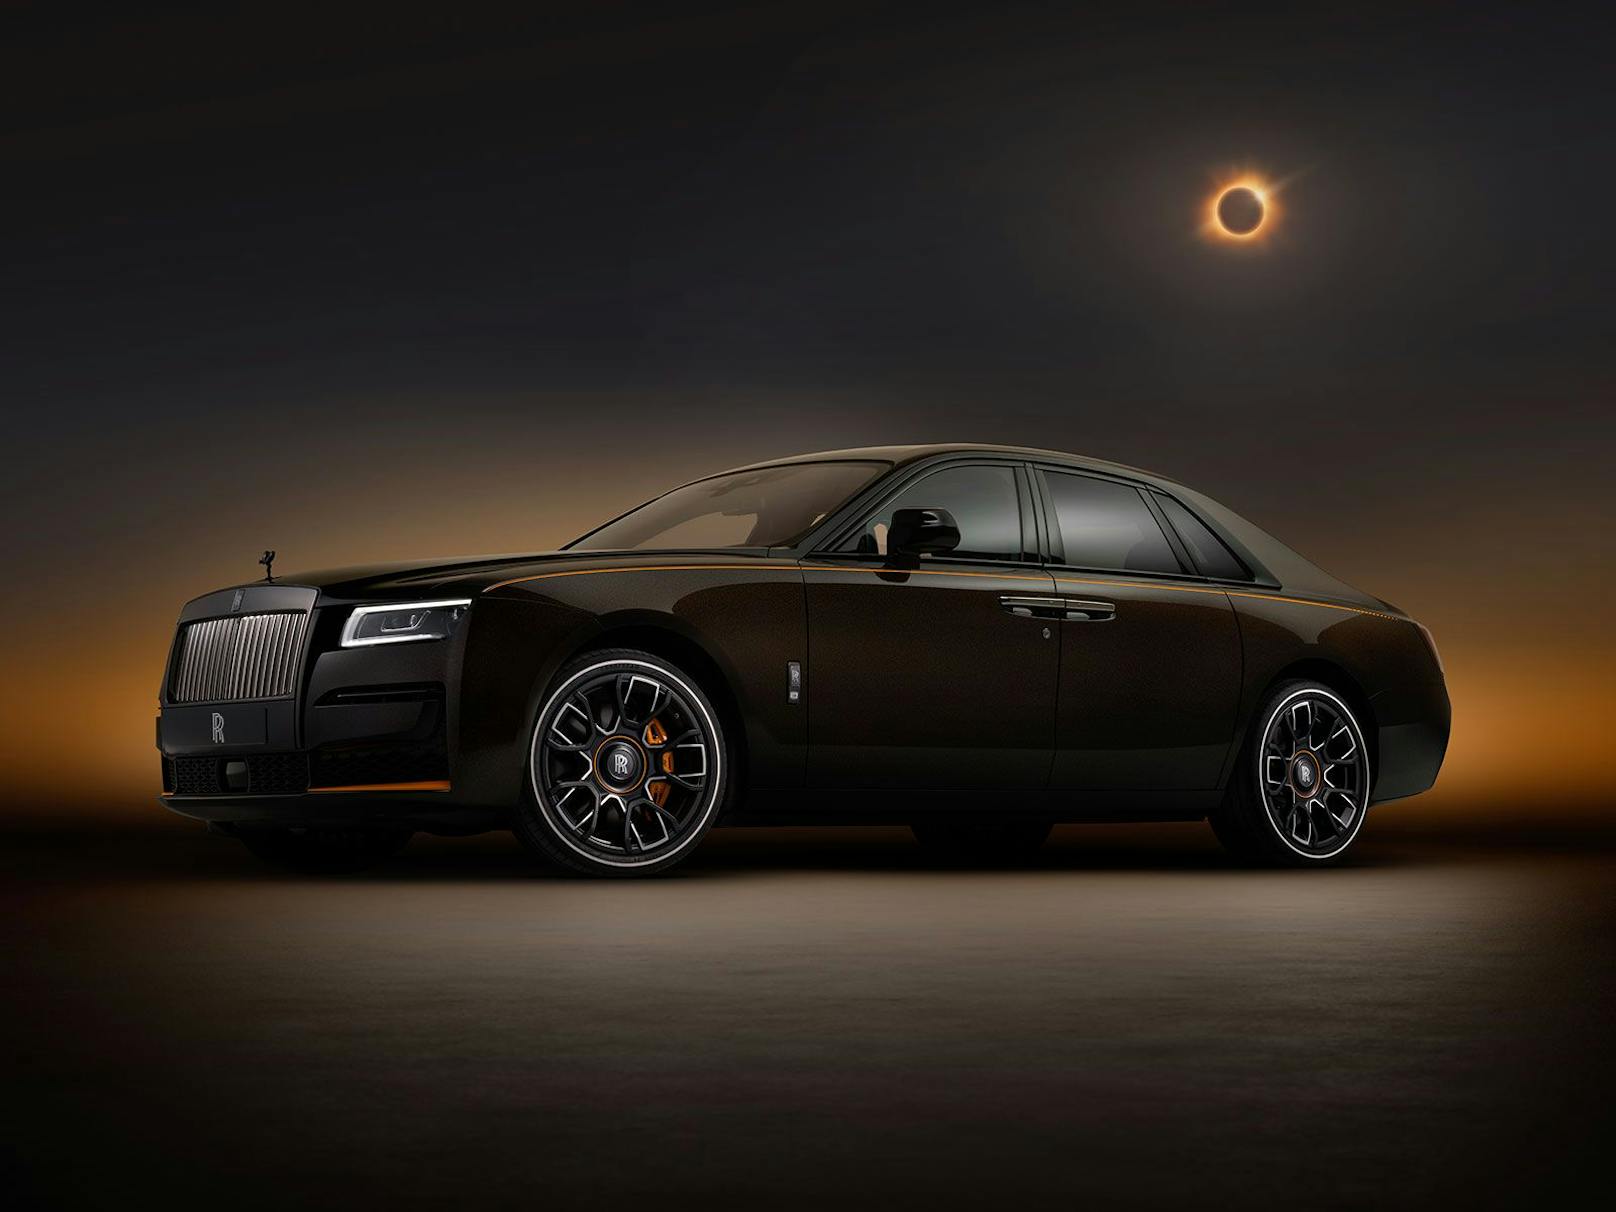 Das Rolls Royce Sondermodell glänzt dank spezieller Außenfarbe kupfern